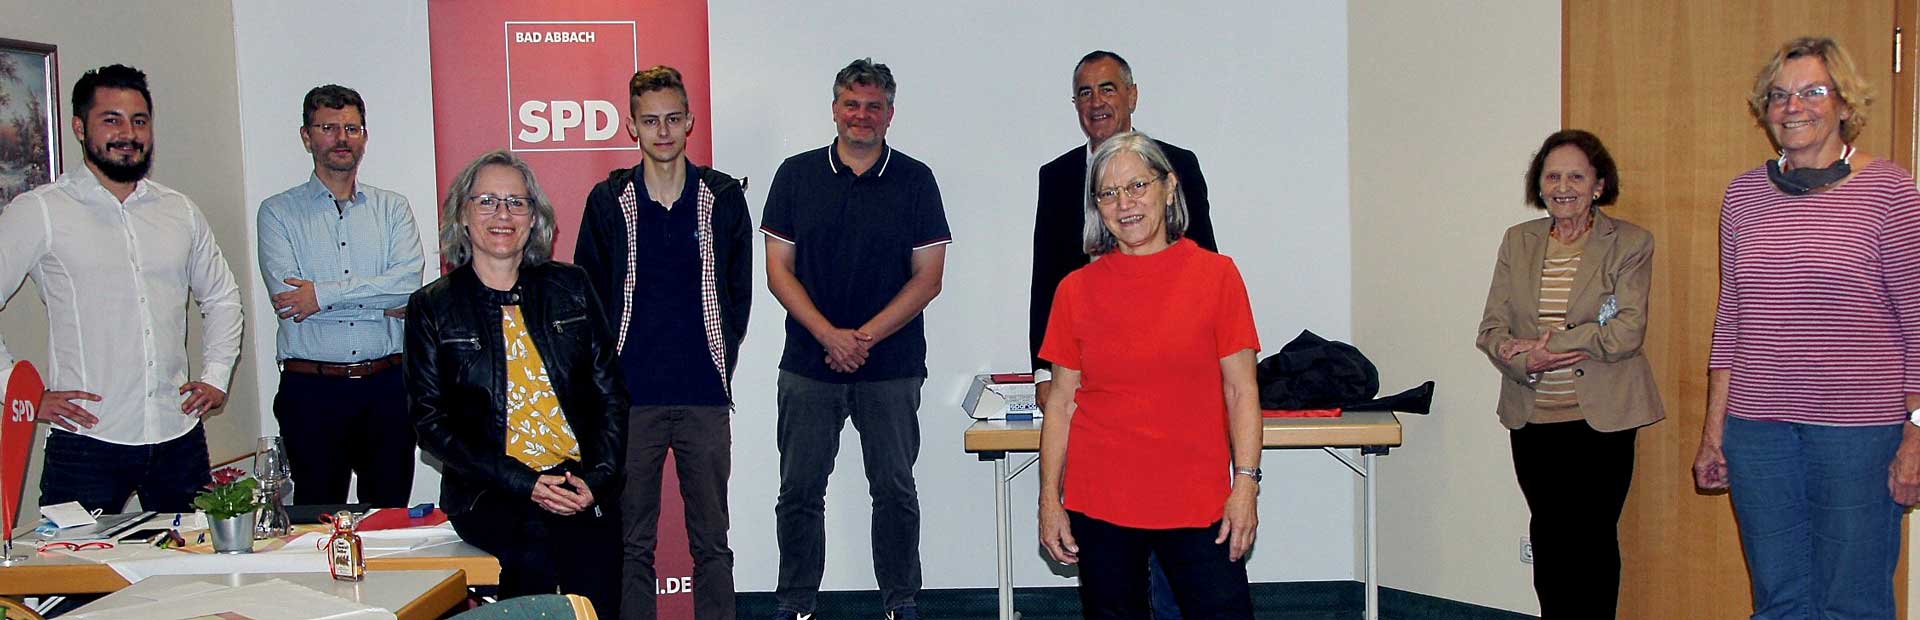 Claudia Huber (vorne links) und Elfriede Bürckstümmer (vorne rechts) wurden mit dem Ehrenbrief der SPD für ihren langjährigen Einsatz für die Partei geehrt (Foto: Manfred Huber)